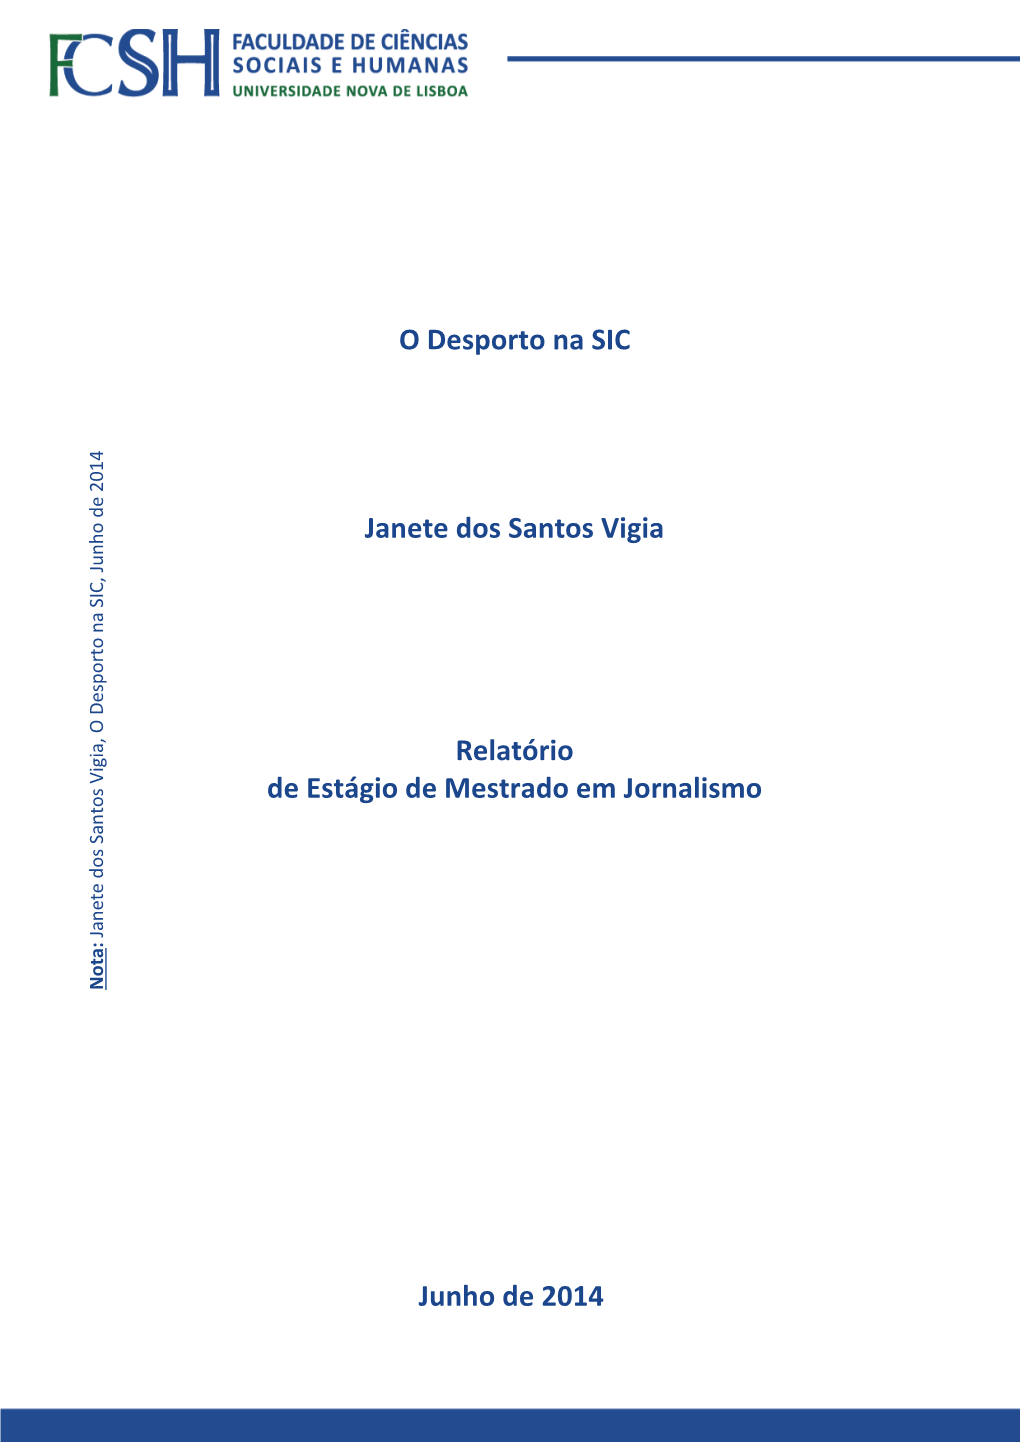 O Desporto Na SIC Janete Dos Santos Vigia Junho De 2014 Relatório De